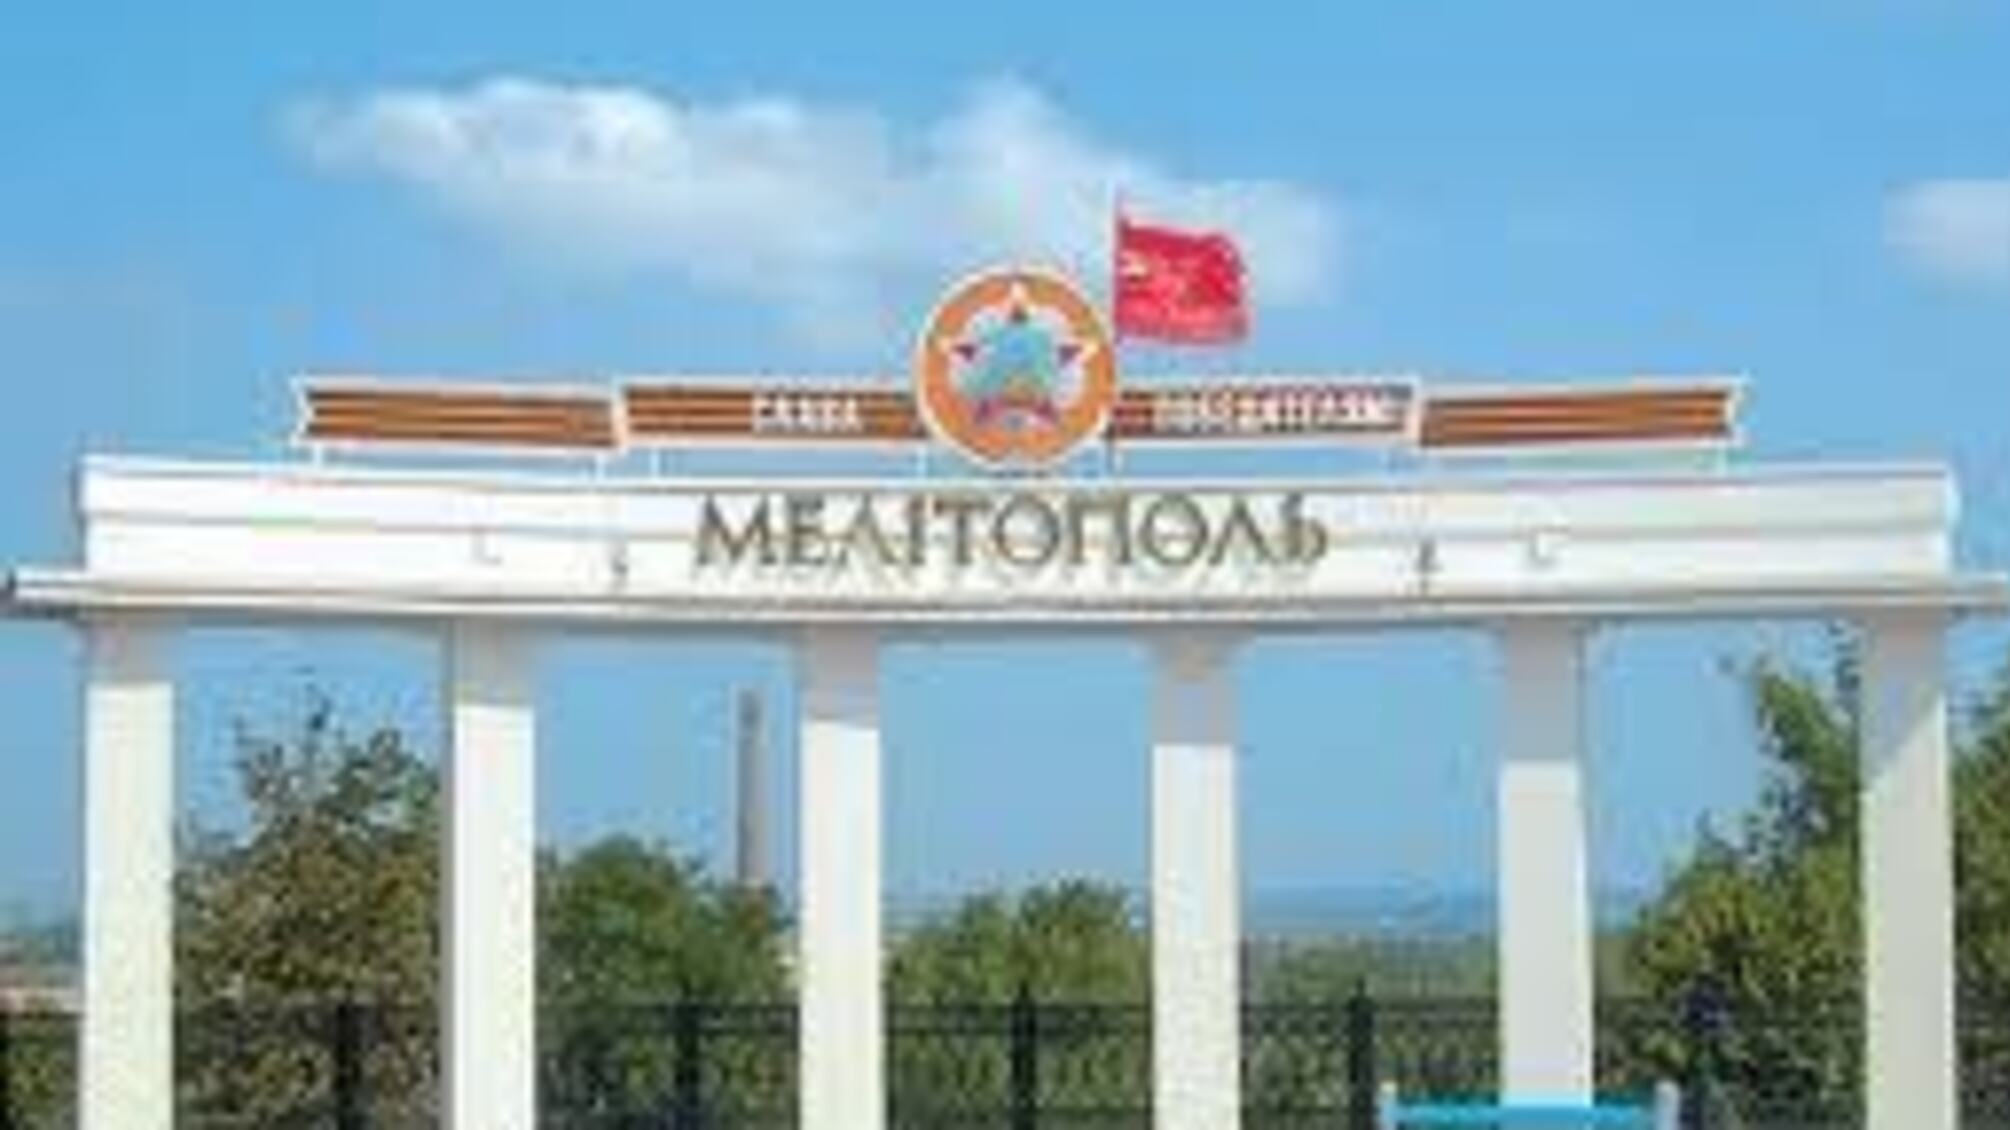 БИЗНЕС СМОТРЯЩЕГО. Мелитопольские теплосети банкротят с целью захвата